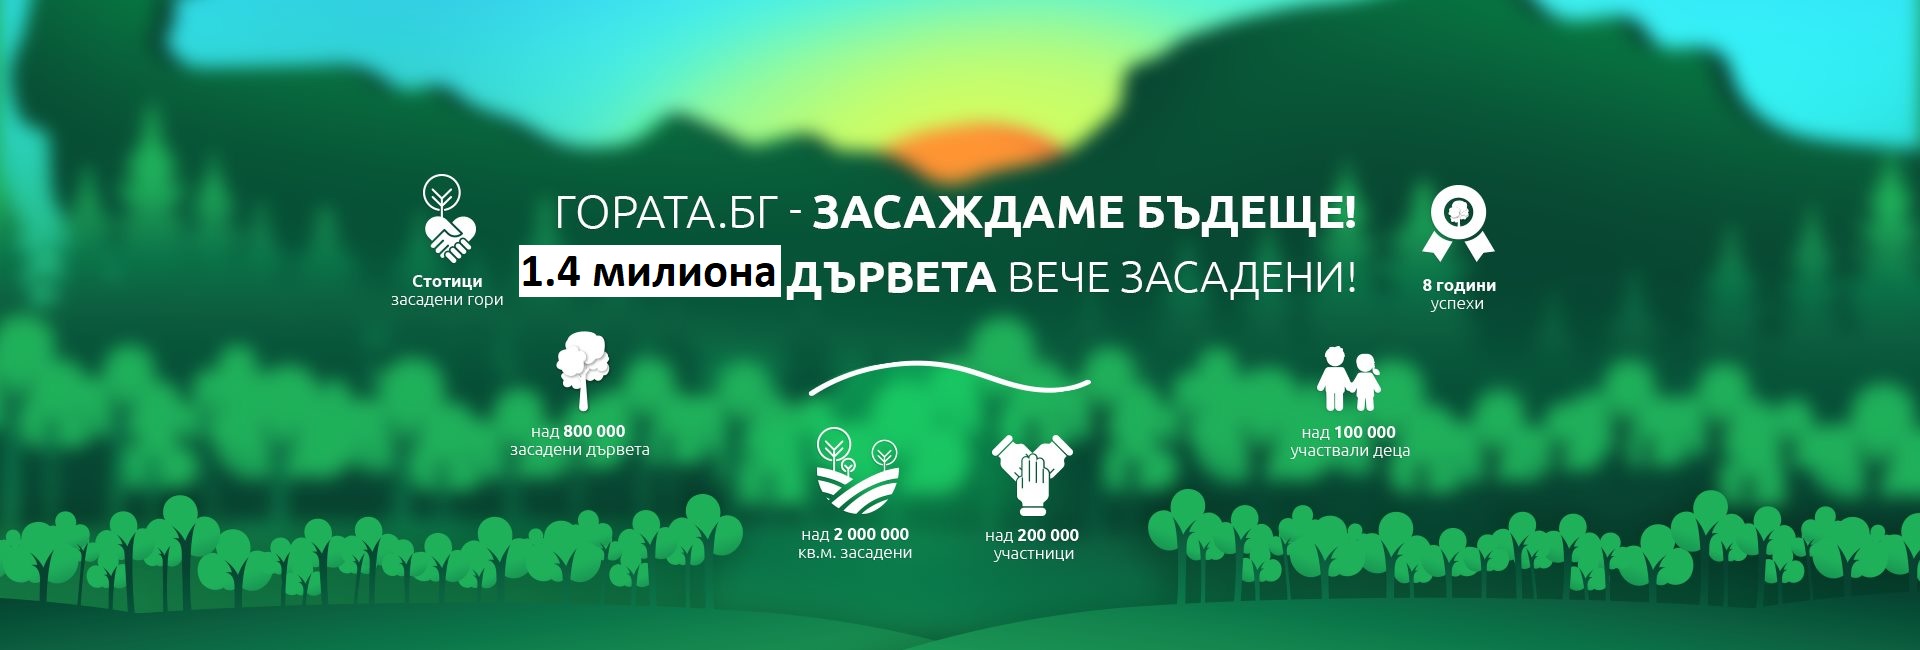 Гората.бг подарява 12 000 плодни и декоративни дръвчета на хората от област Благоевград